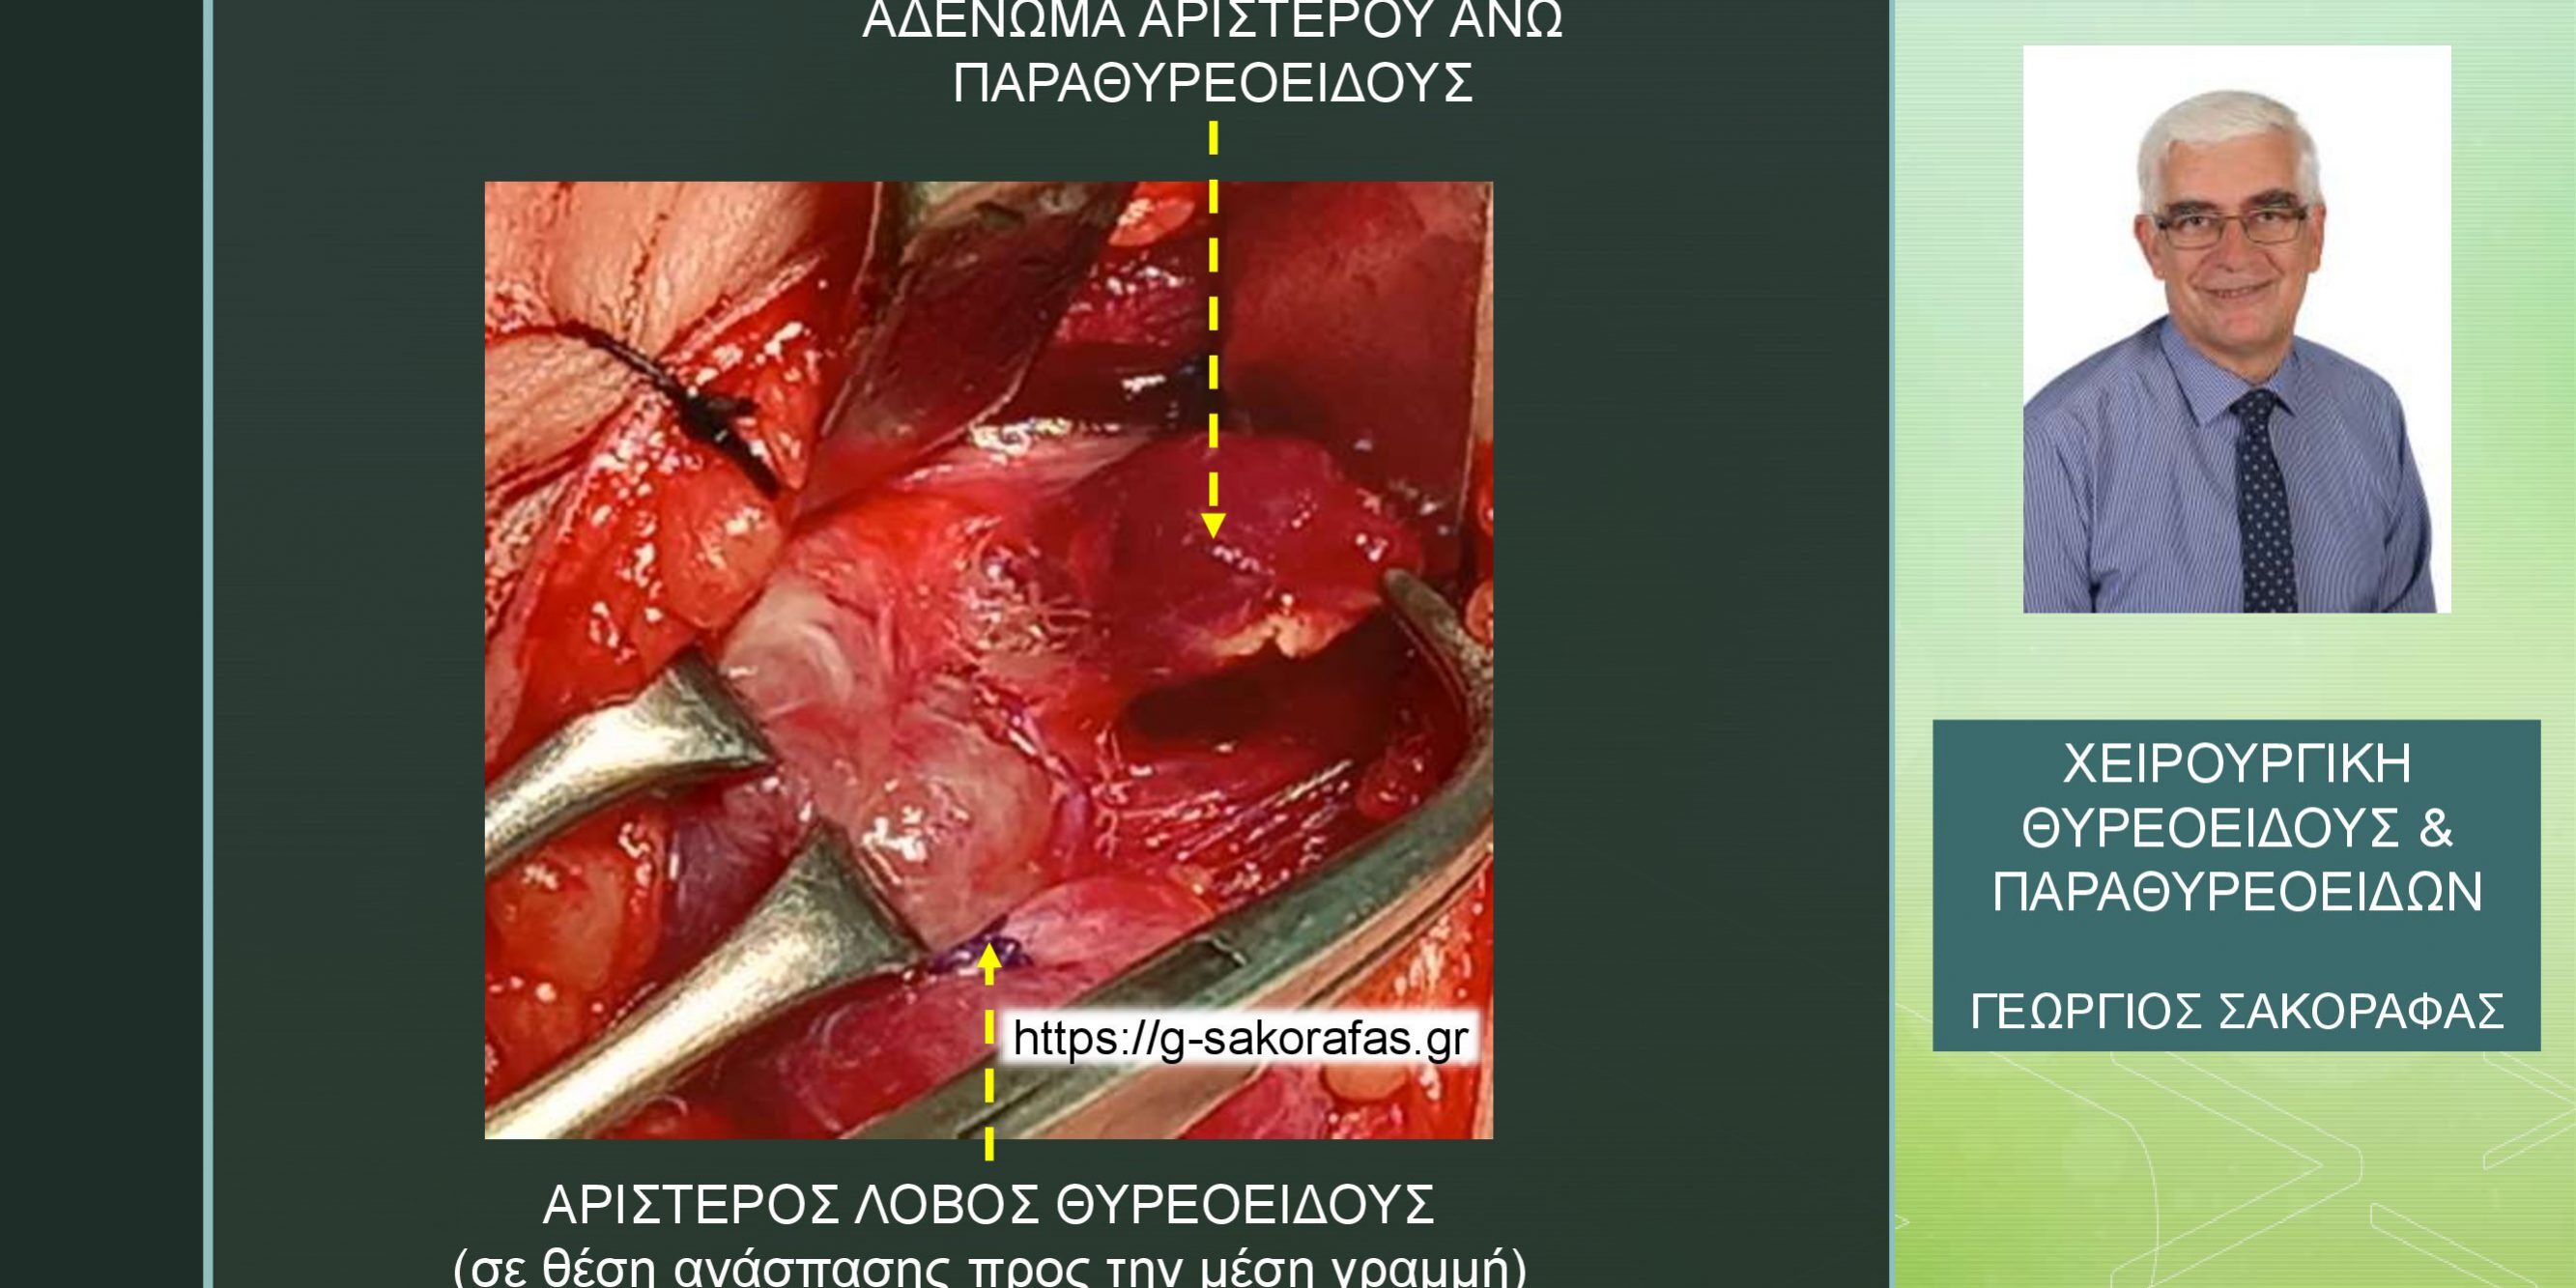 Πρωτοπαθής υπερπαραθυρεοειδισμός σε νεαρή (25 ετών) ασθενή – παραθυρεοειδεκτομή με αμφοτερόπλευρη διερεύνηση τραχήλου